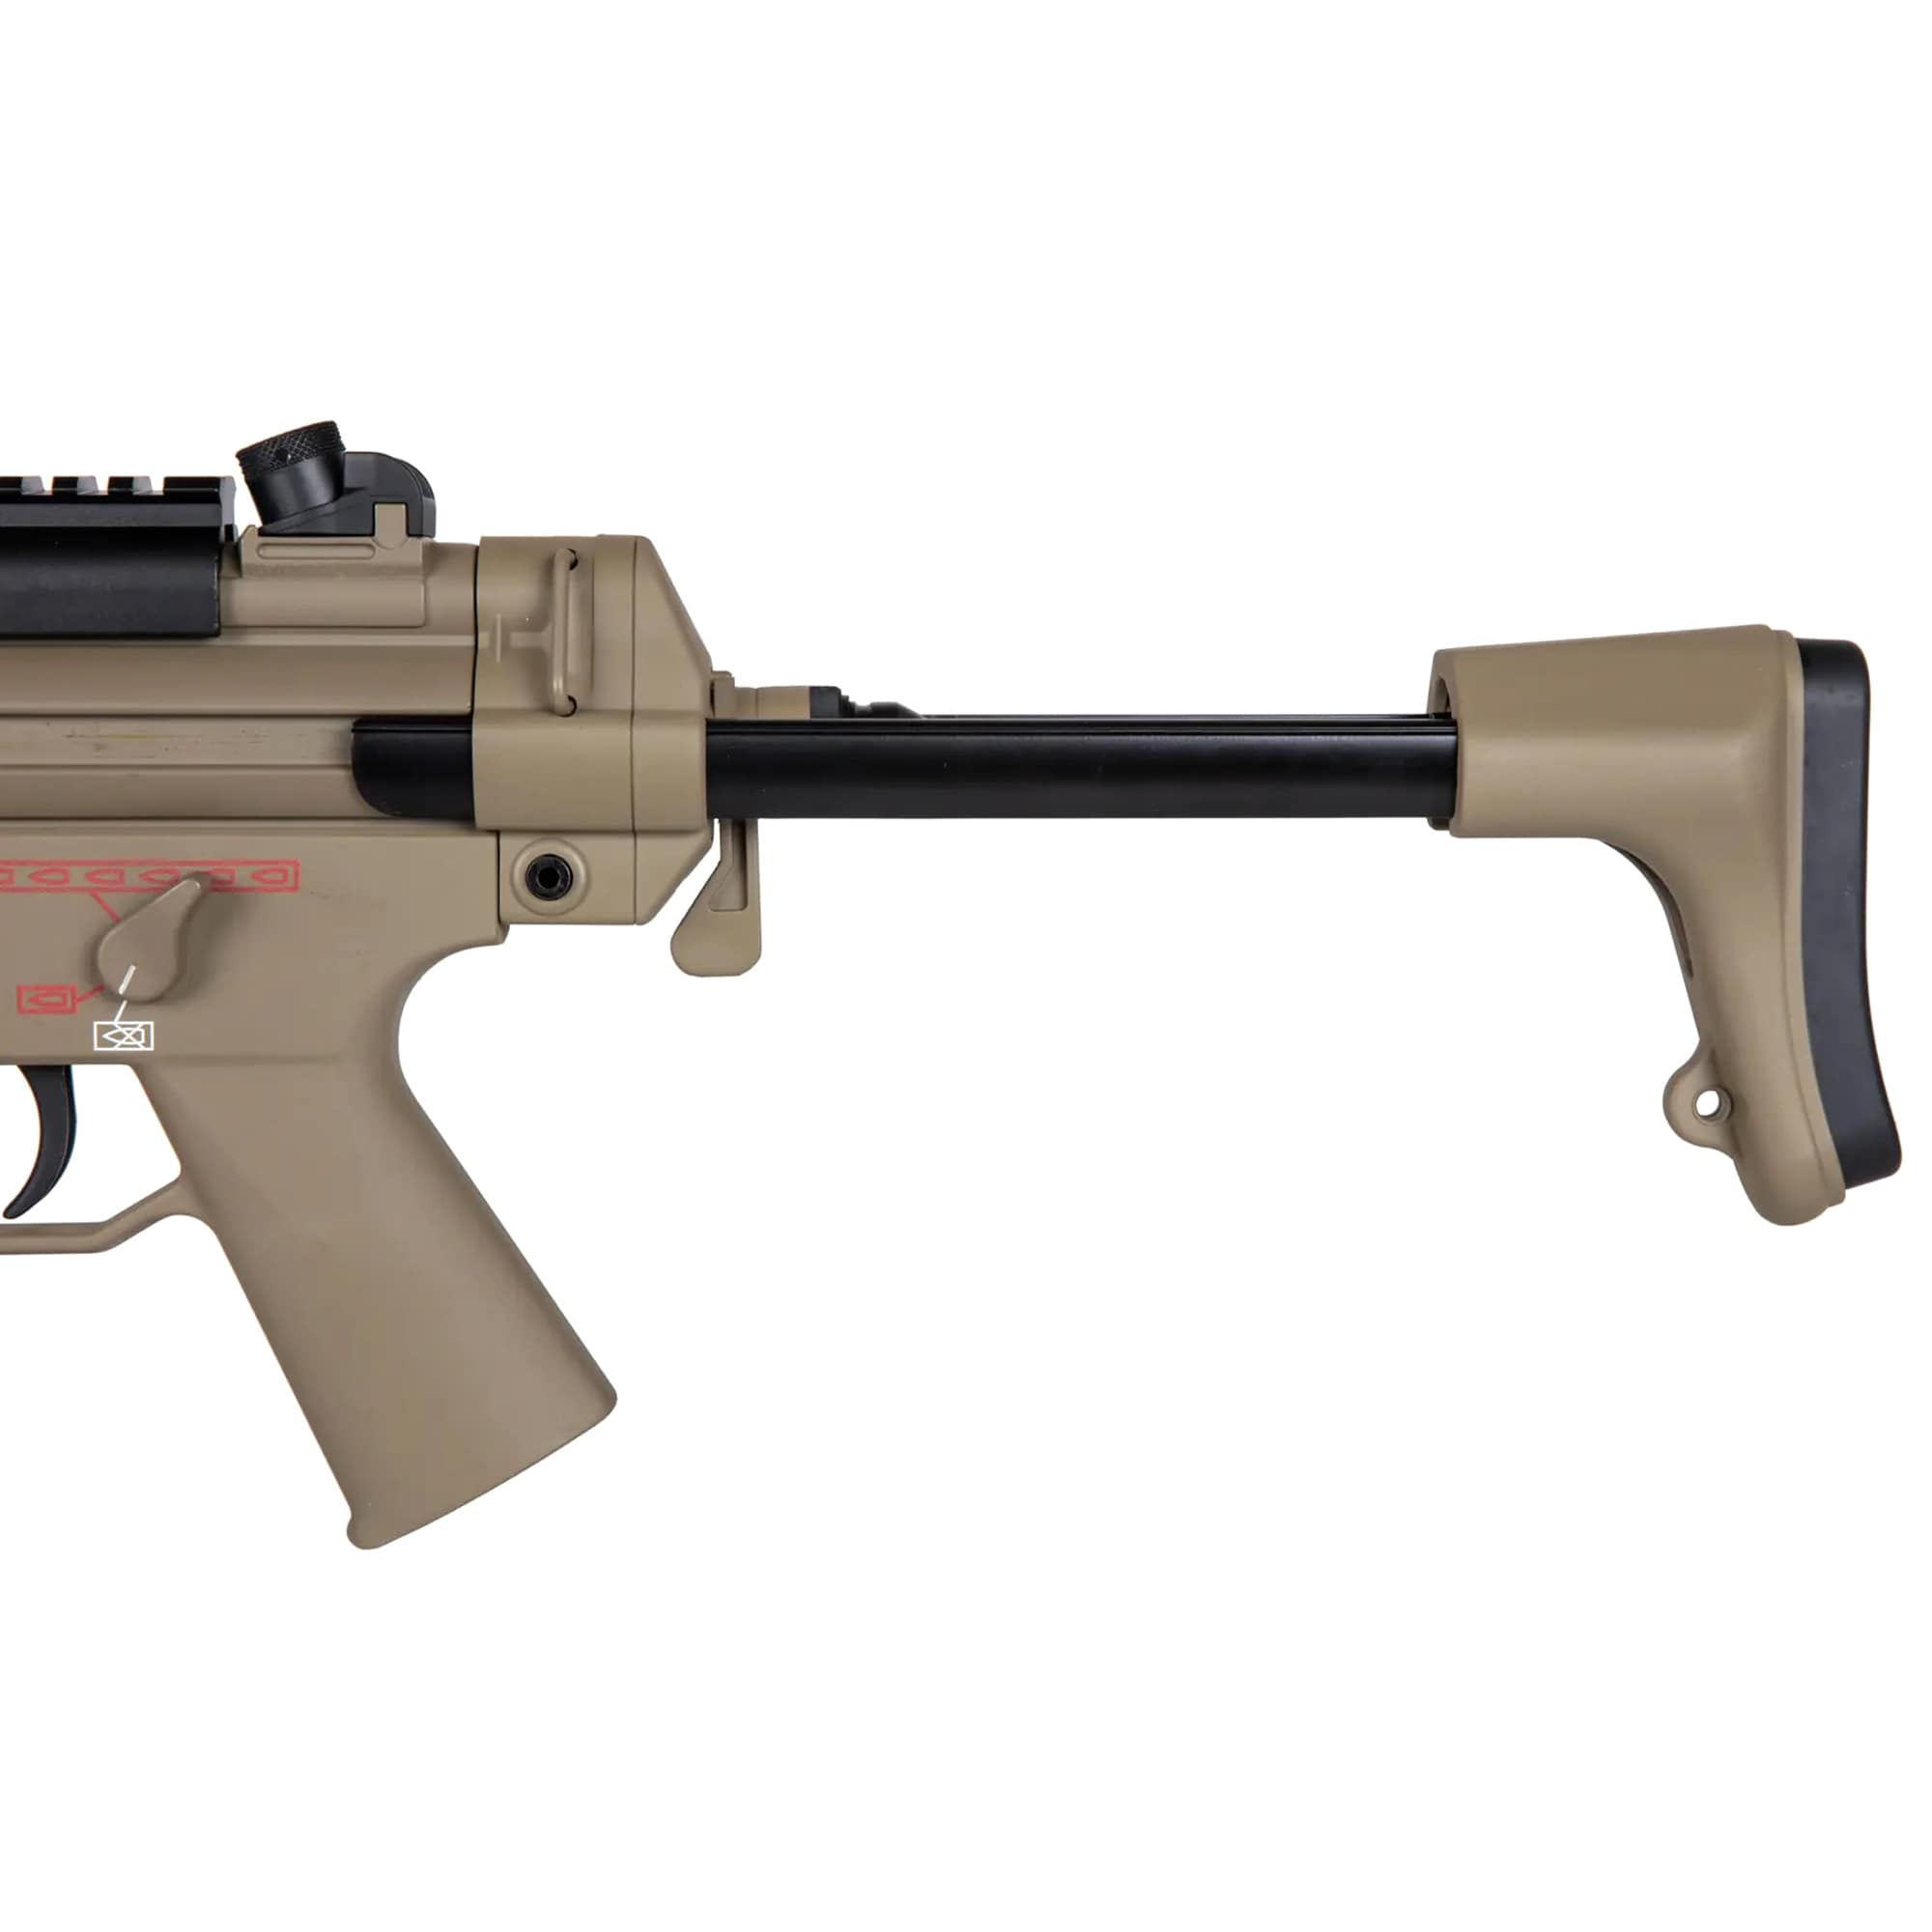 Pistolet maszynowy AEG JG MP5-808 - Tan